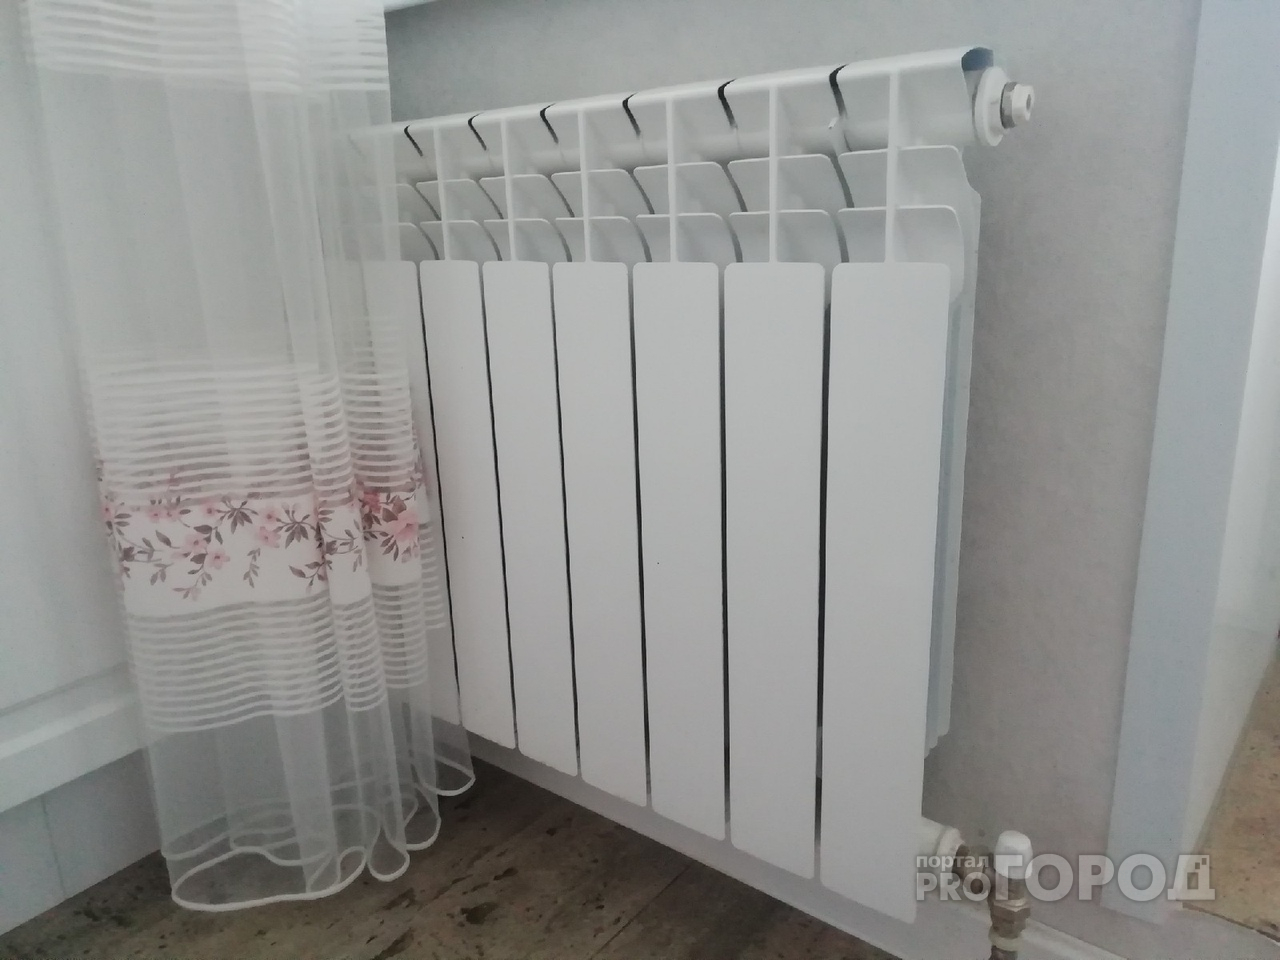 «Отопление включили, а батареи ледяные»: йошкаролинцы страдают от холода в квартирах